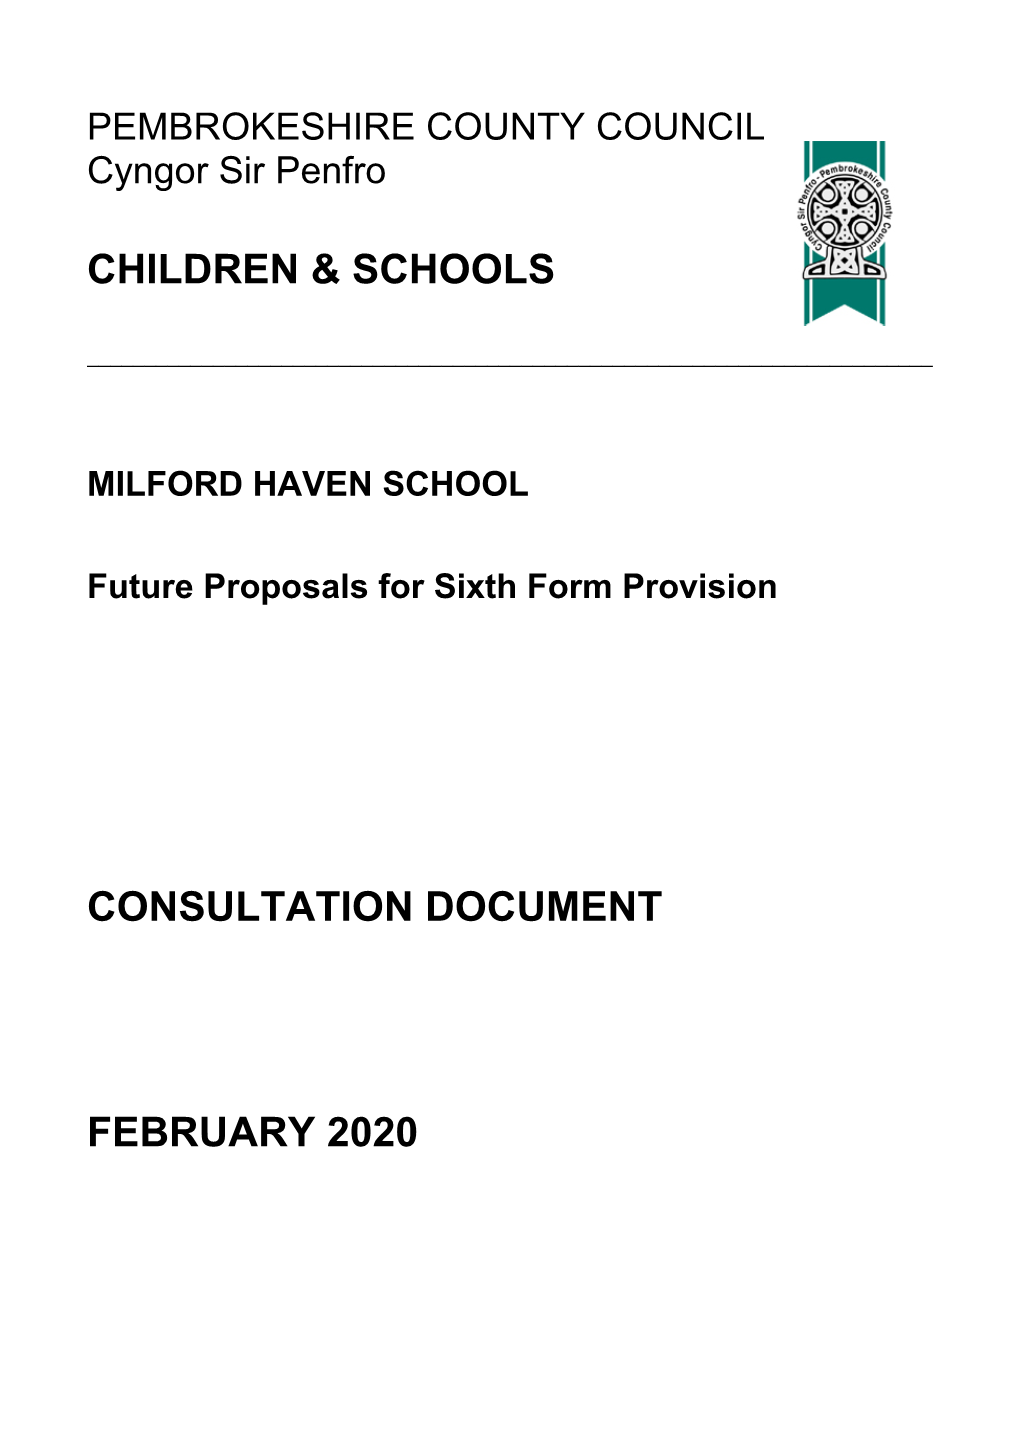 Children & Schools Consultation Document